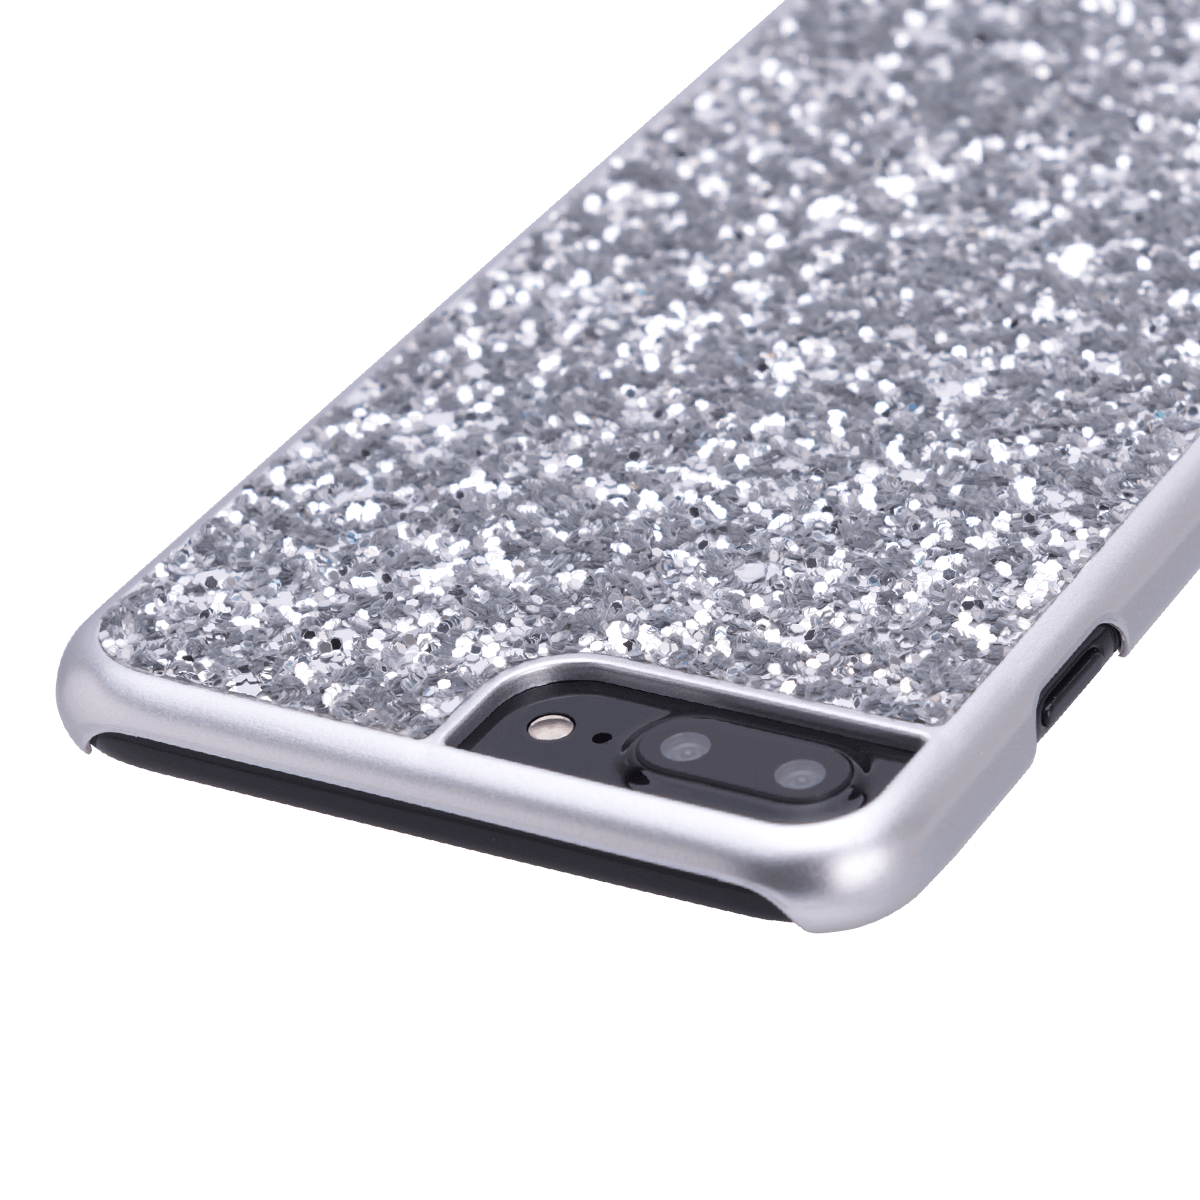 iPhone 7/8 Plus için spada Glitter Gümüş rengi Kapak